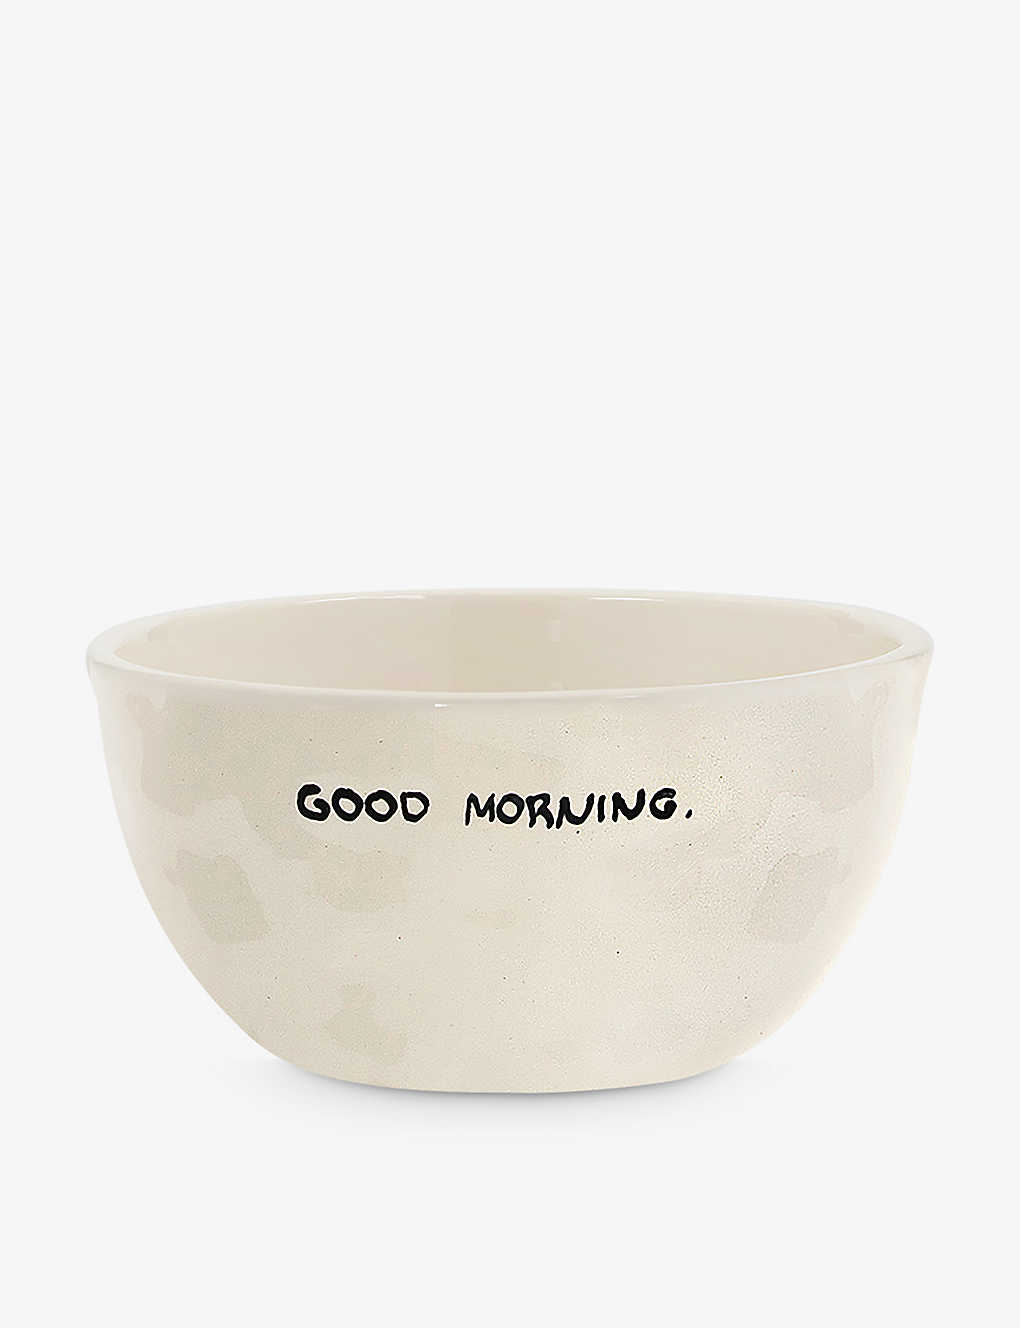 Anna + Nina Good Morning Ceramic Bowl 14cm In White